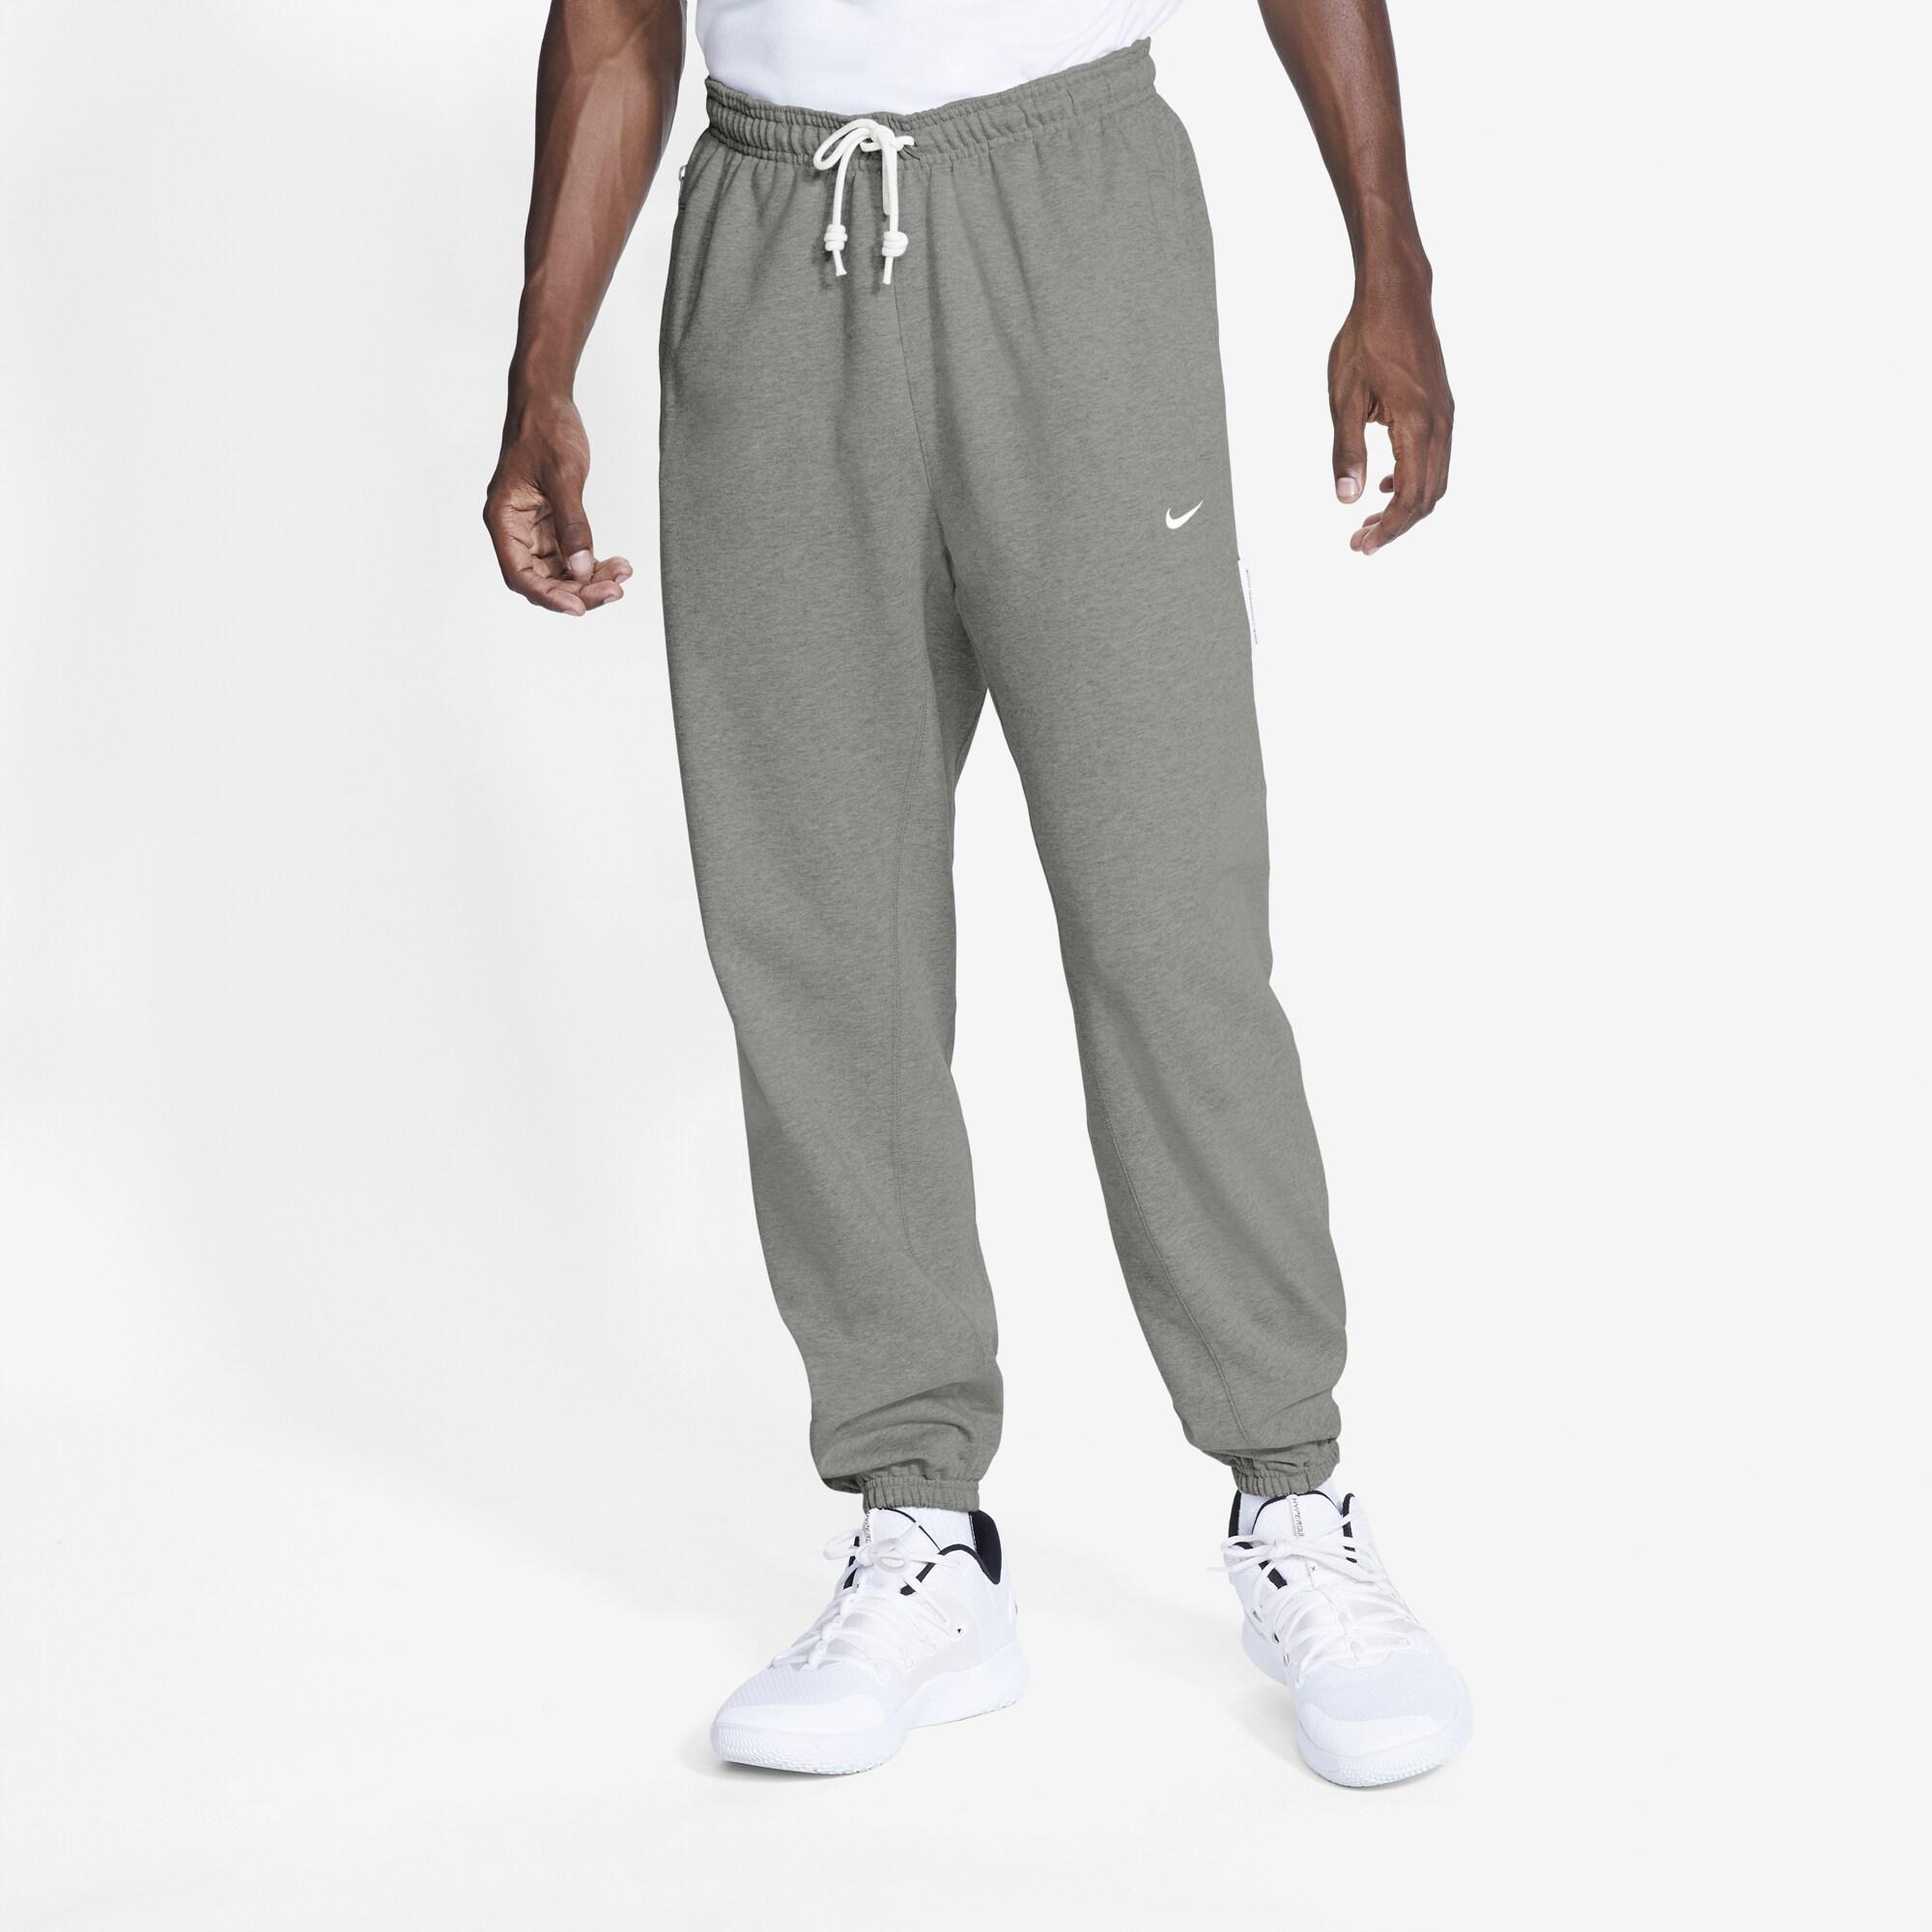 Nike Fleece Standard Issue Pants in Dark Grey Heather/Pale Ivory (Gray ...